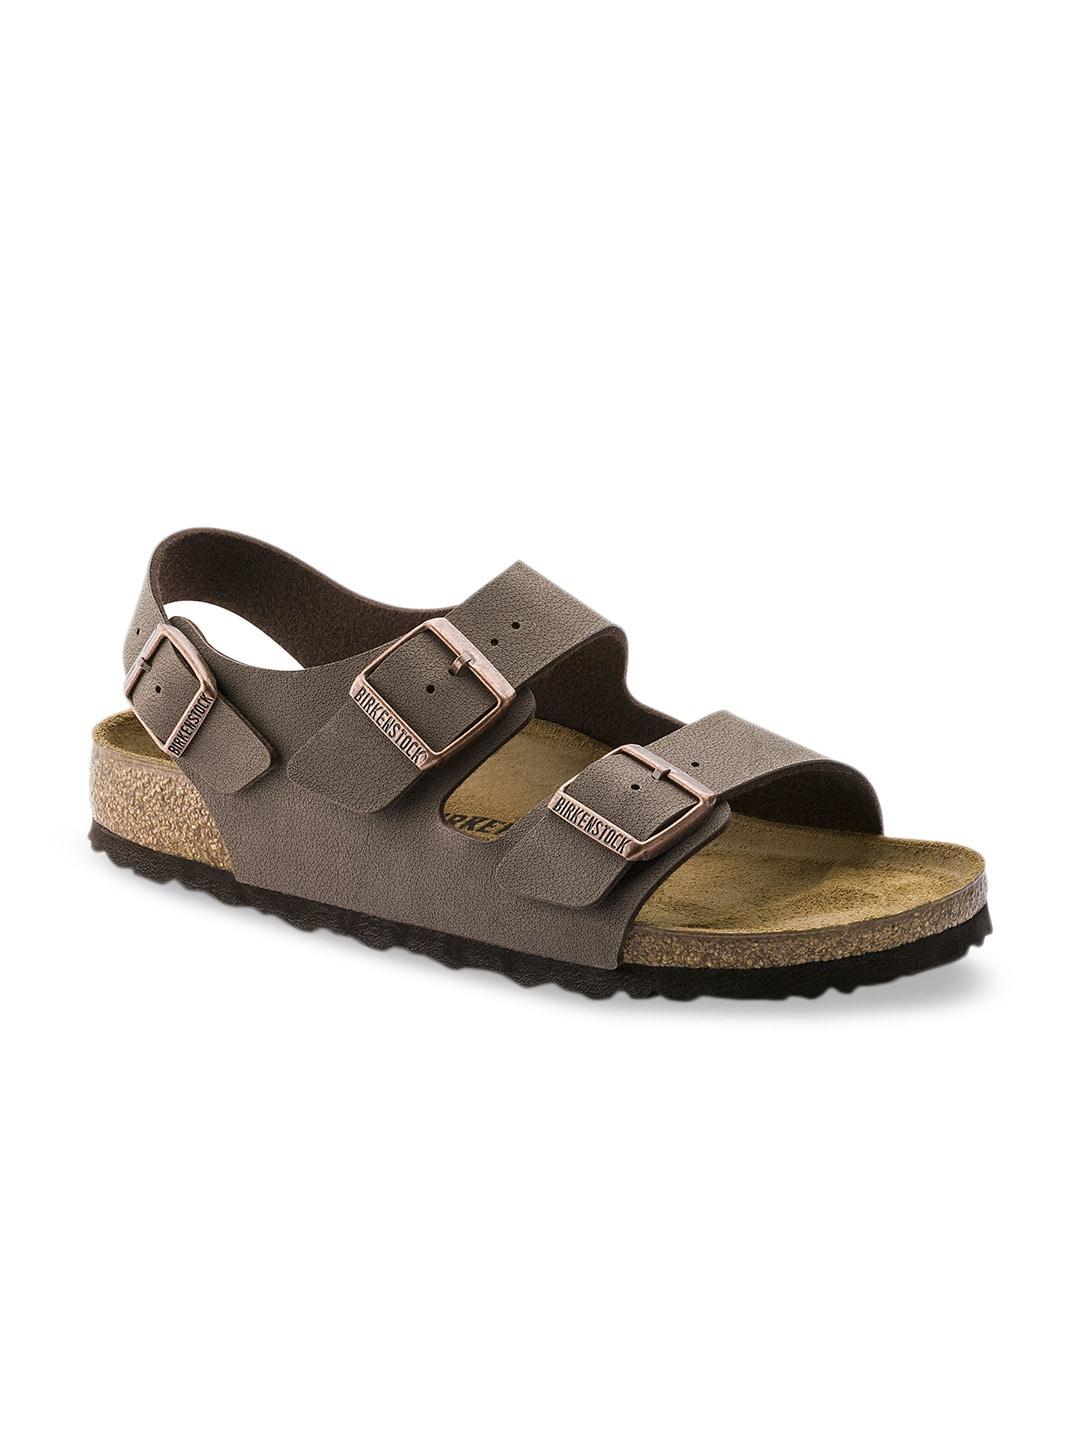 birkenstock unisex brown milano birko-flor regular width nubuck sandals